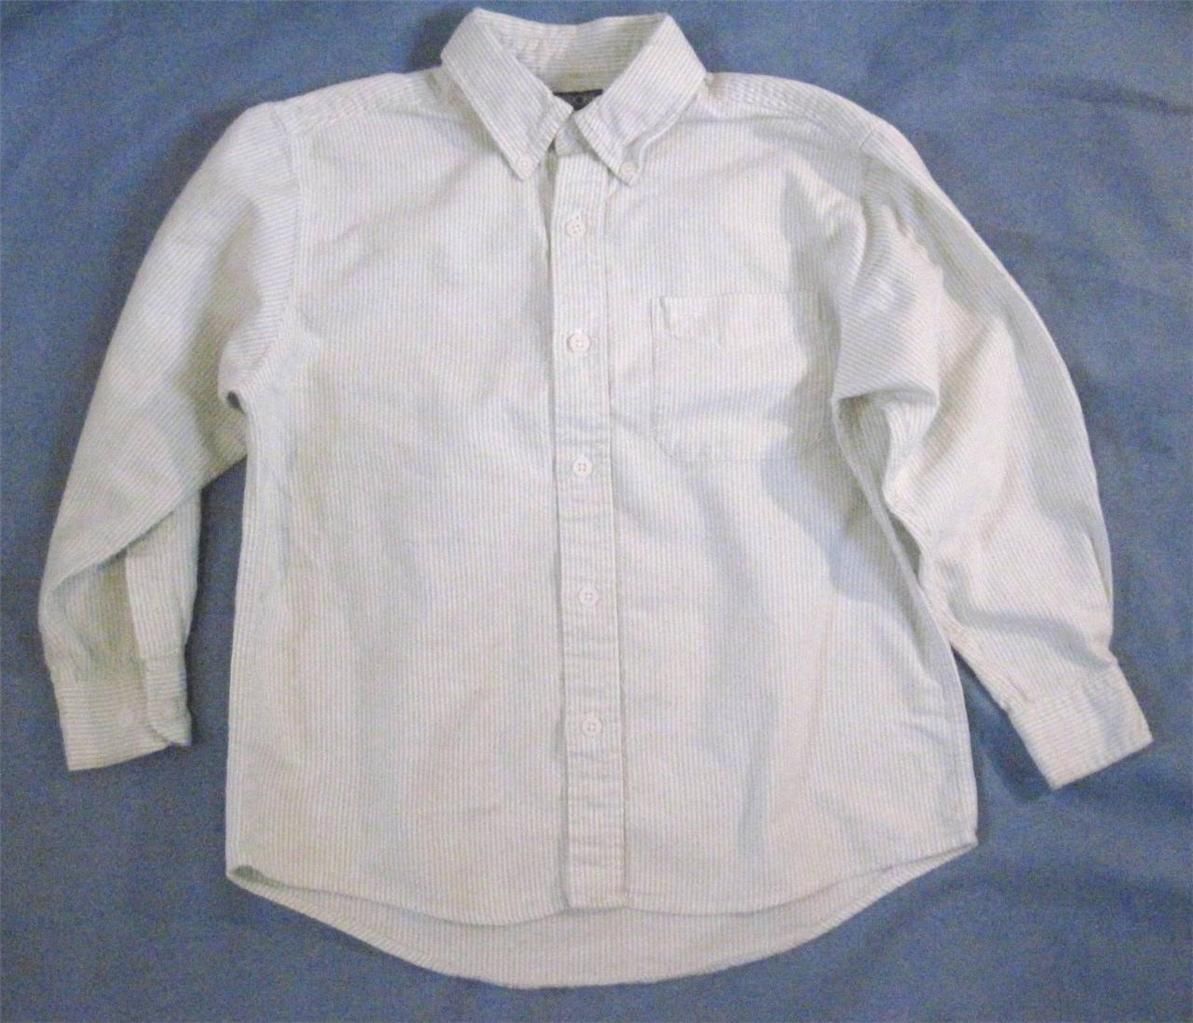 Boy Size 8 Light Green Pinstripe Casual Dress Shirt Cherokee Long Sleeve Cotton - $8.81